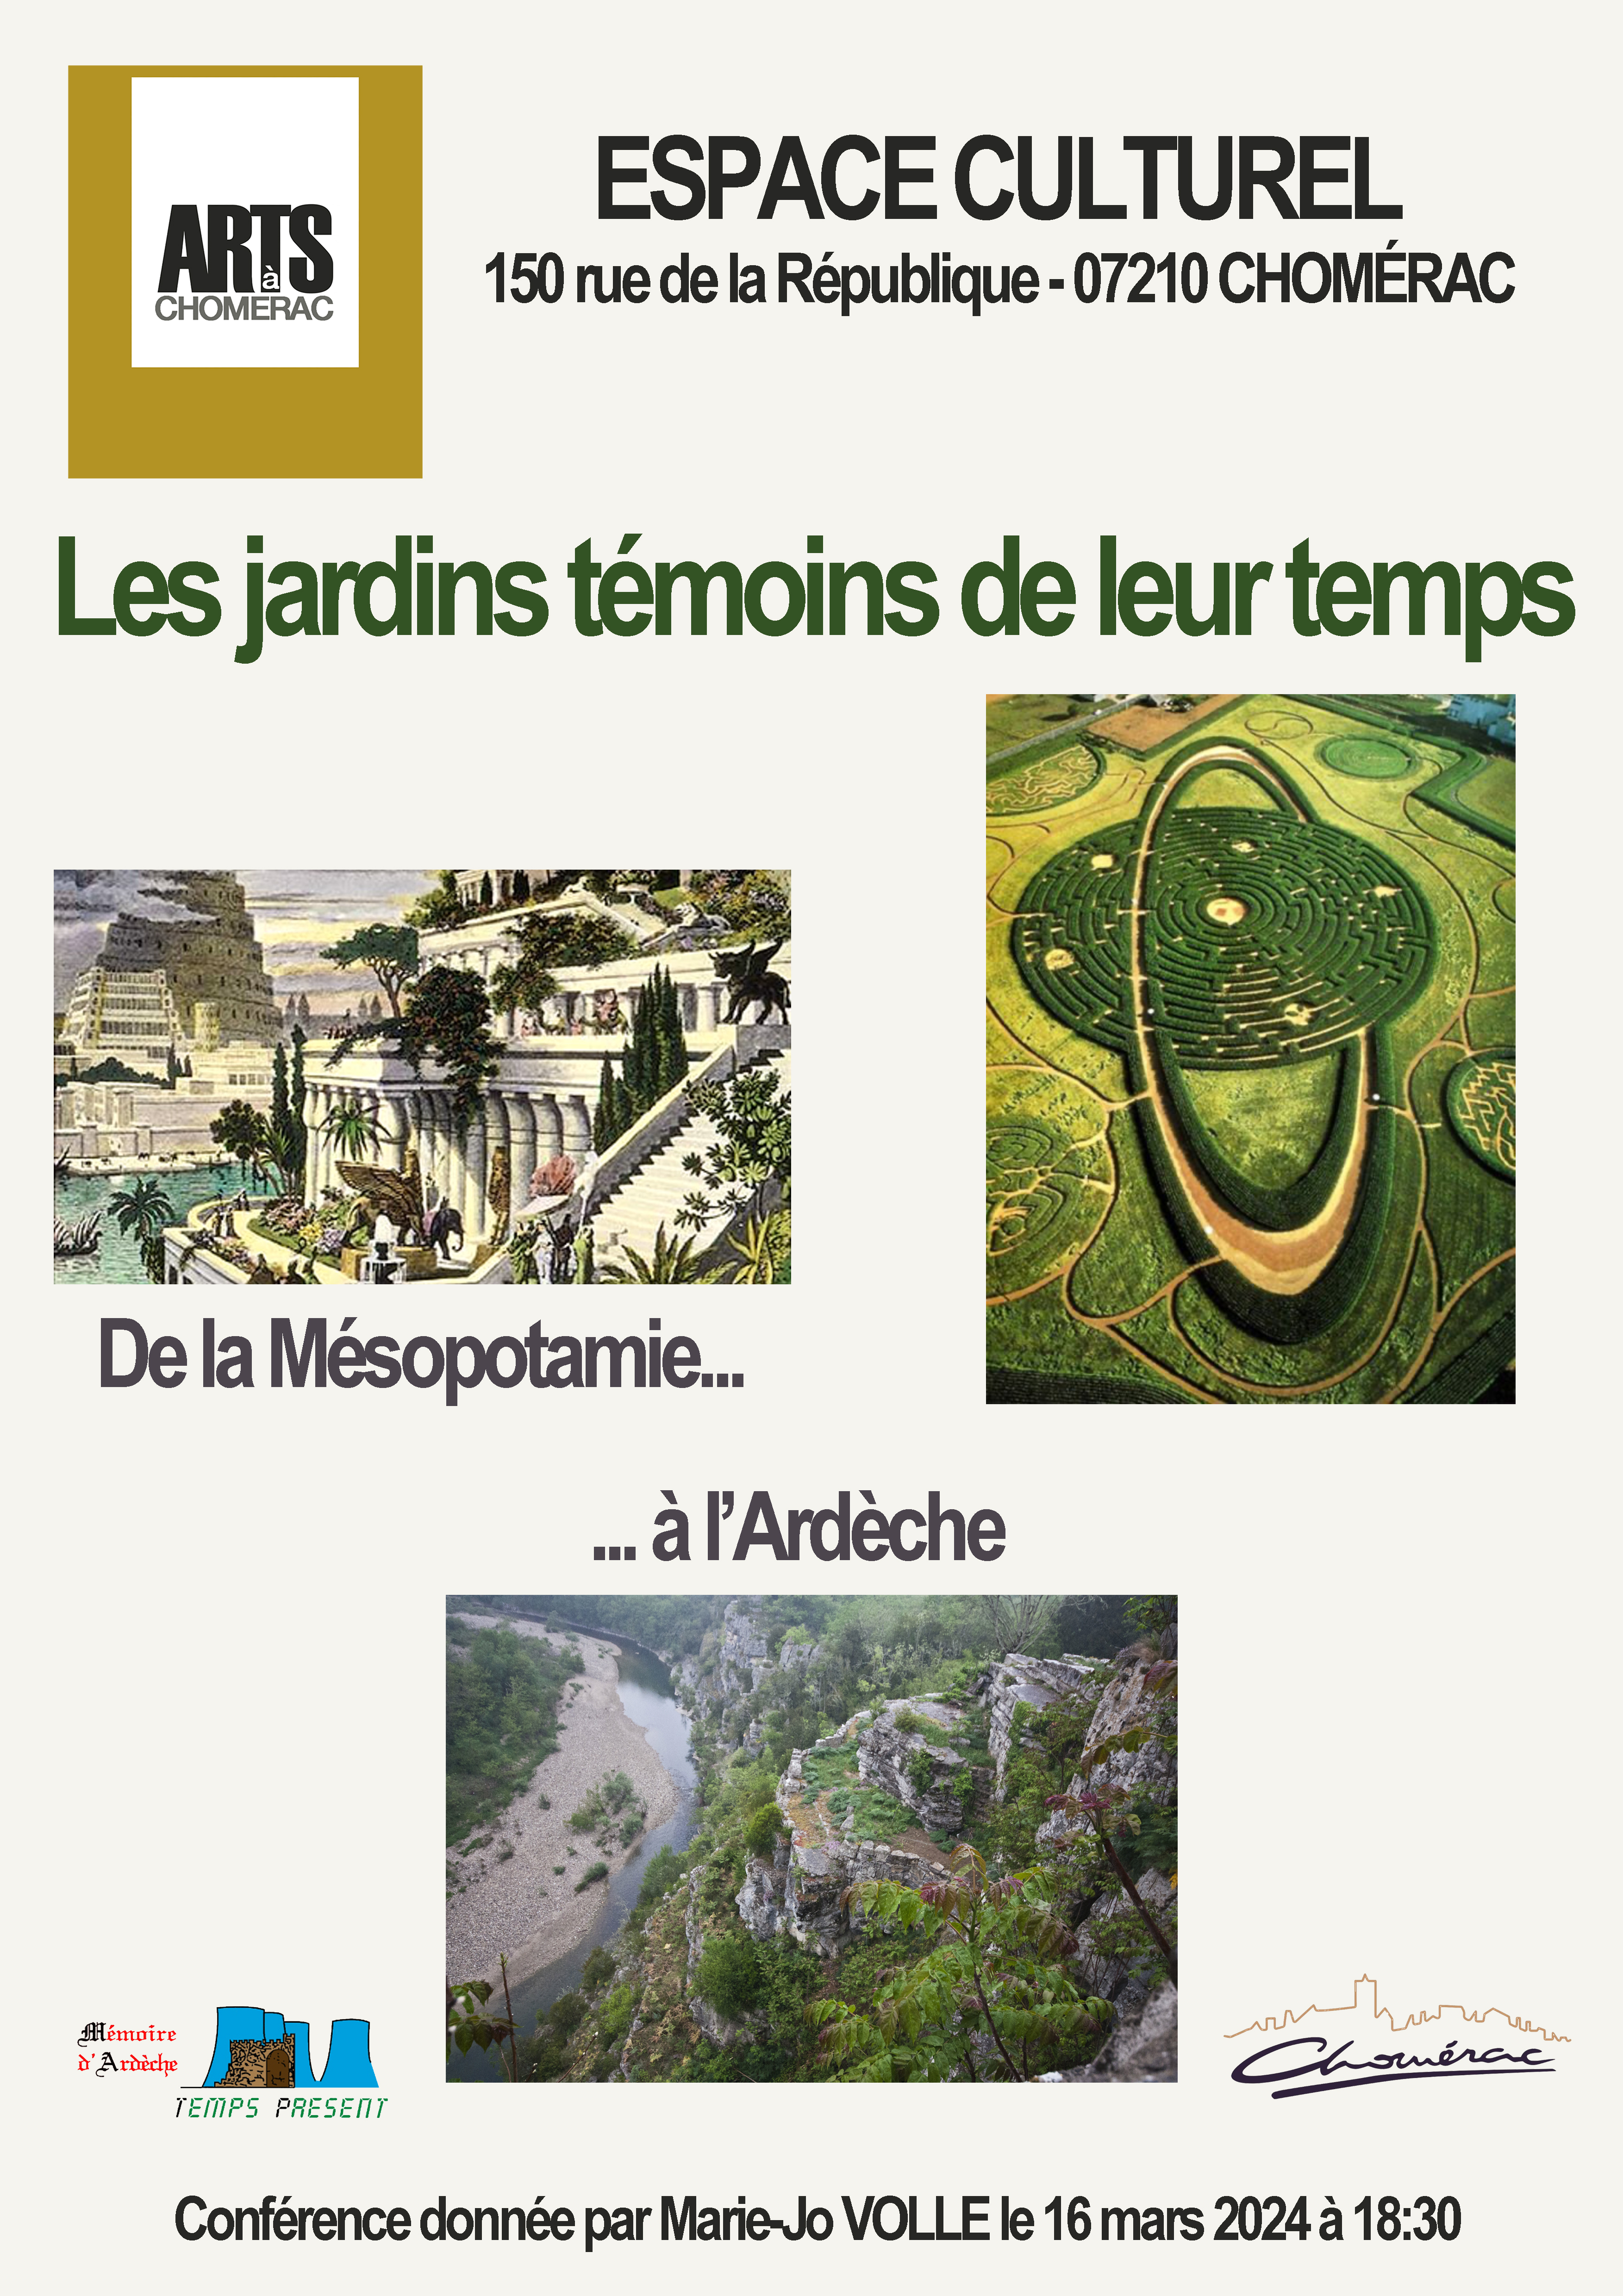 Events…Put it in your diary : Conférence : Les jardins témoins de leur temps, de la Mésopotamie à l'Ardèche